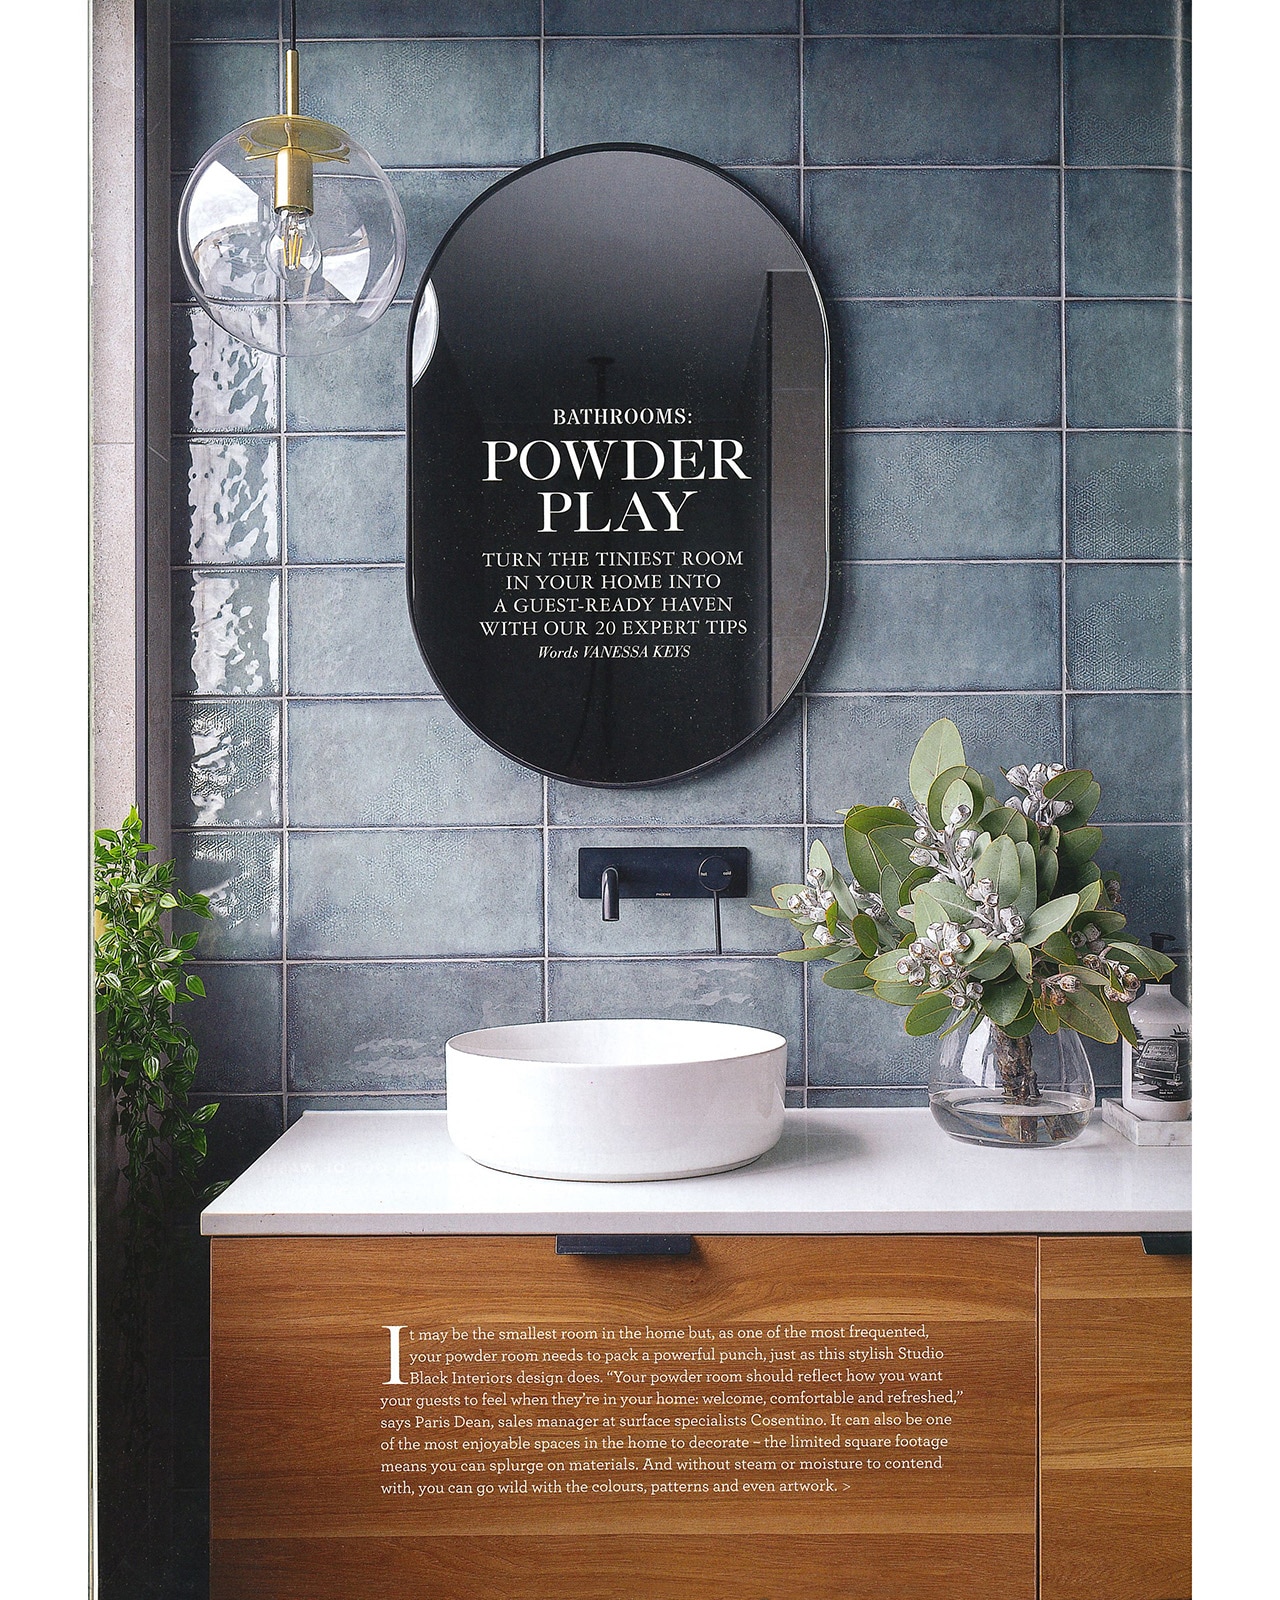 Studio Black Interiors featured in Home Beautiful Magazine.